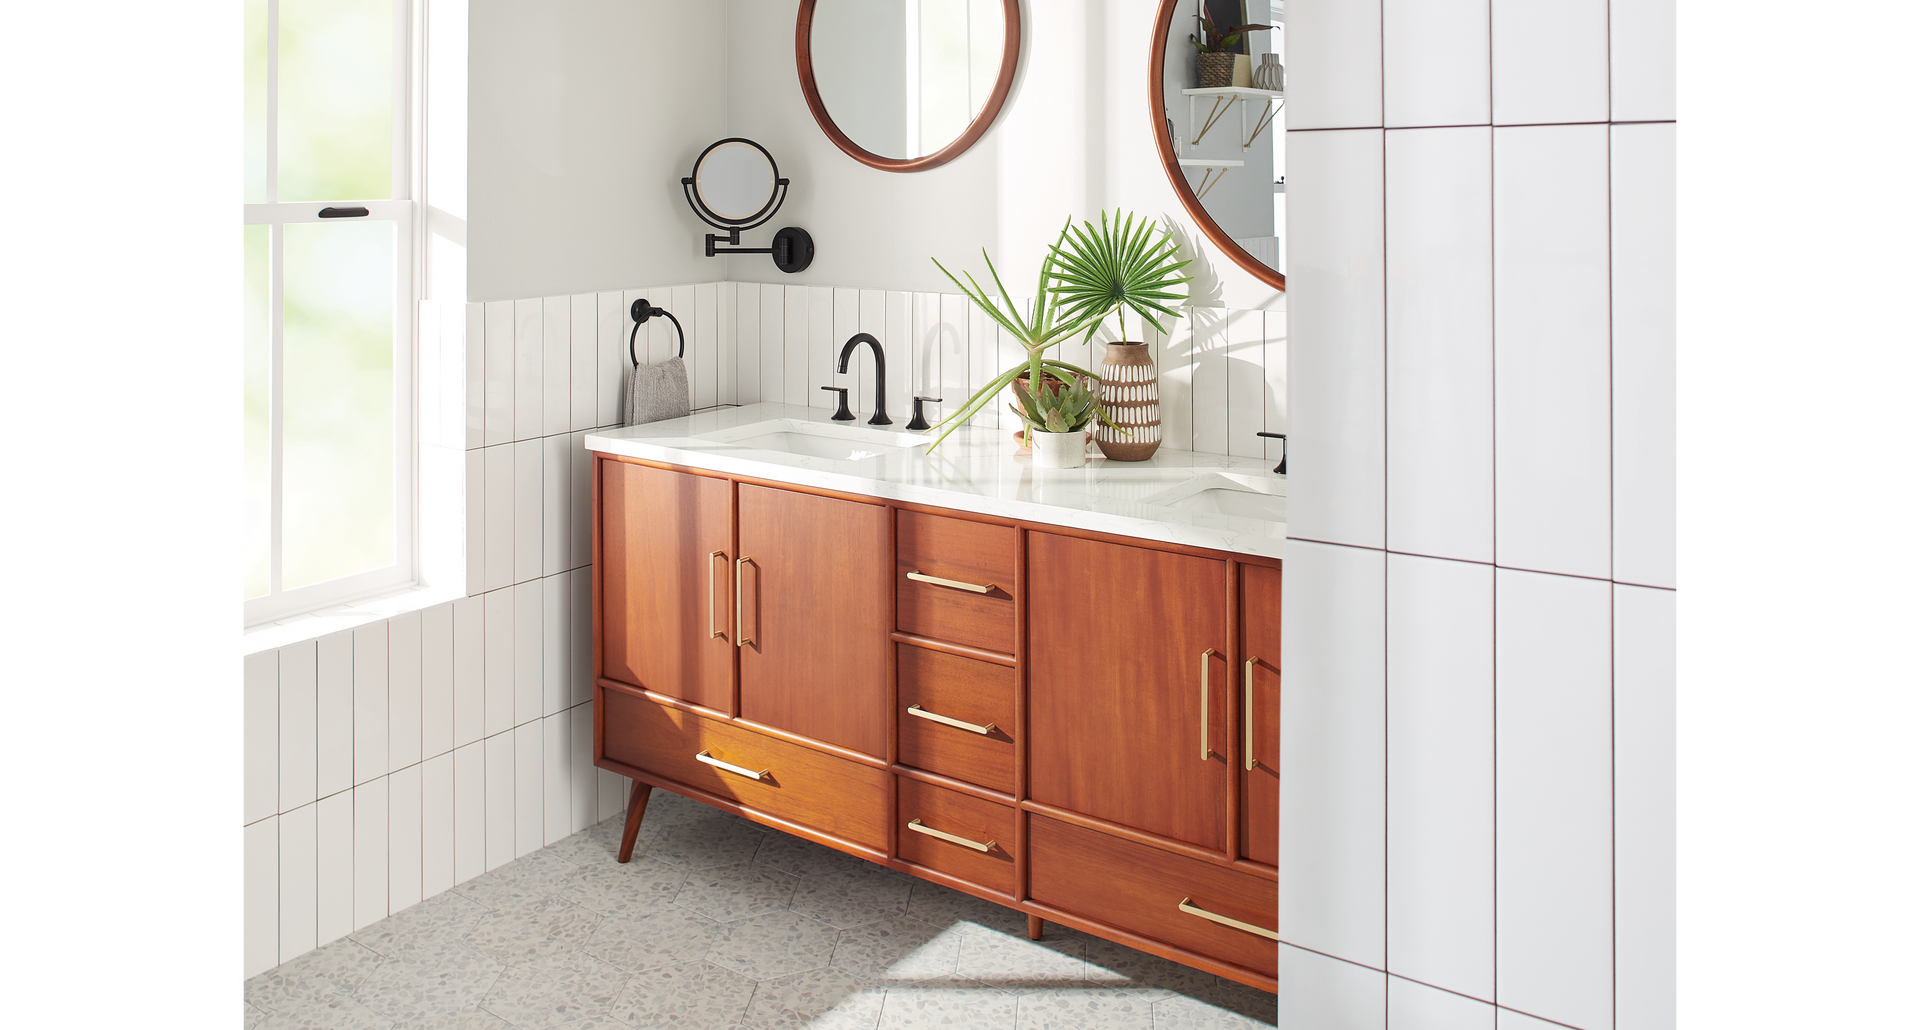 Scandinavian design bathroom for interior design trends - 72" Novak Vanity, Lentz Widespread Faucet in Matte Black